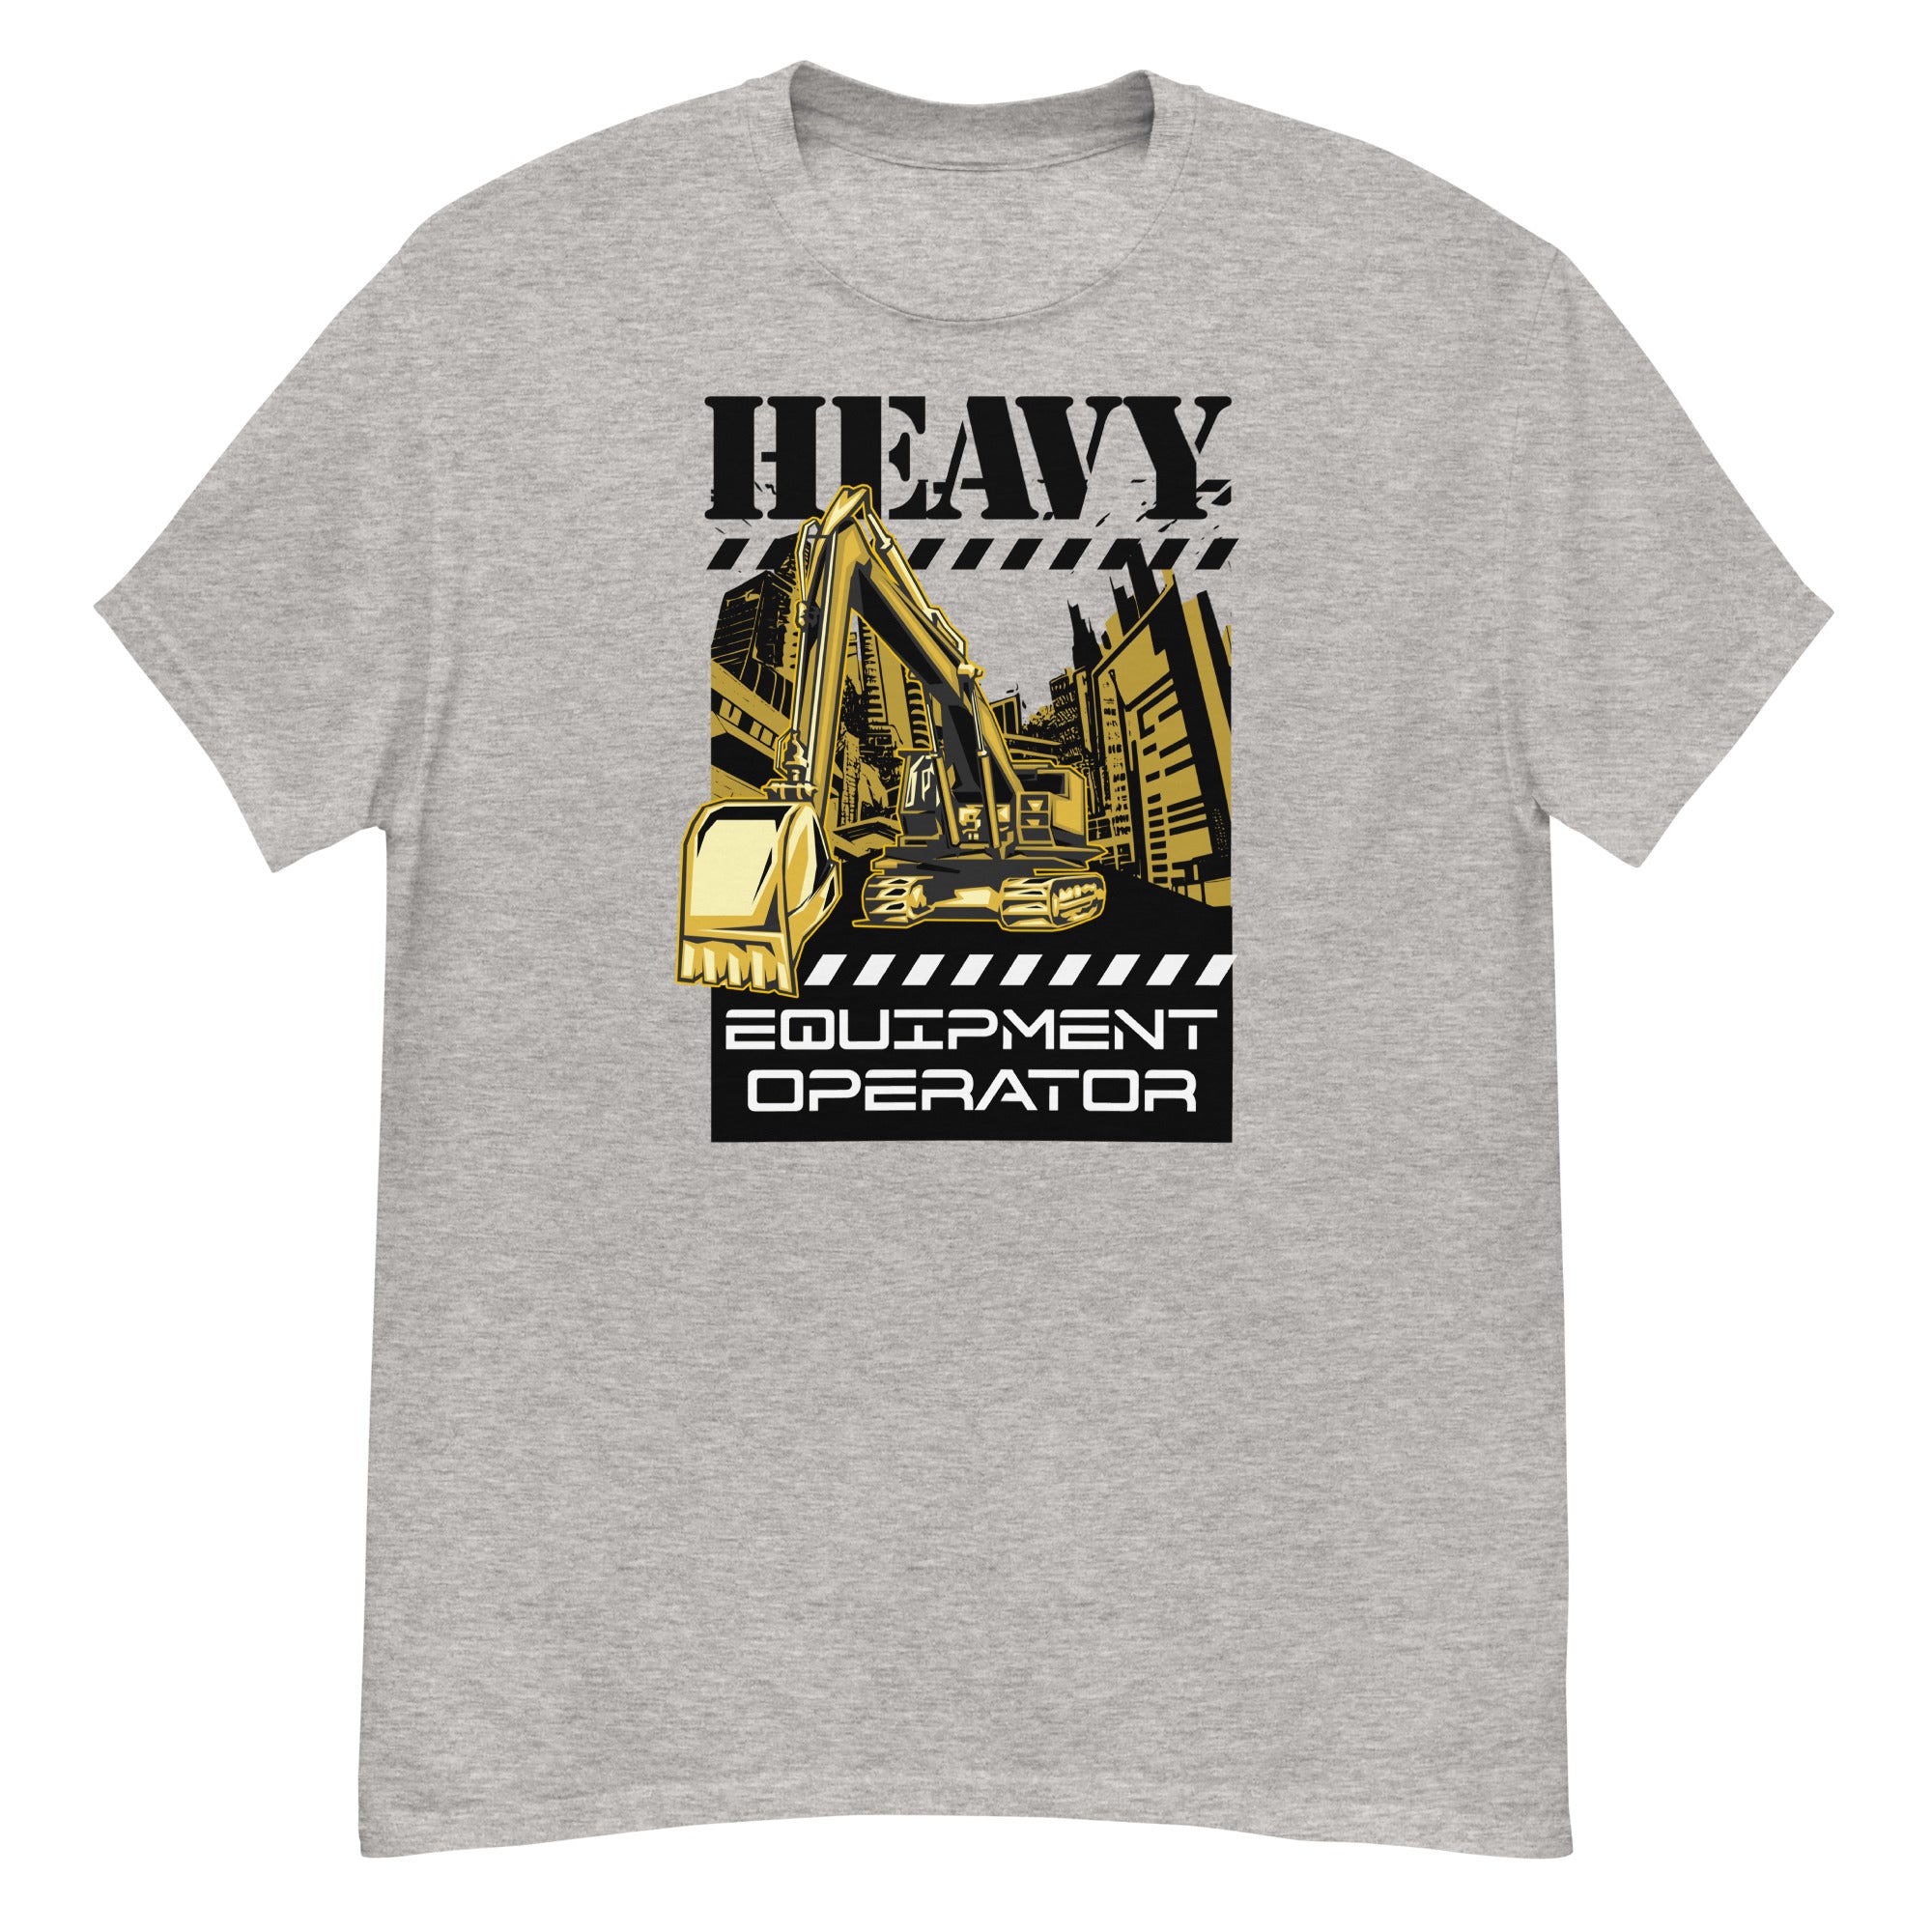 Heavy Equipment Operator Men's Classic T-Shirt